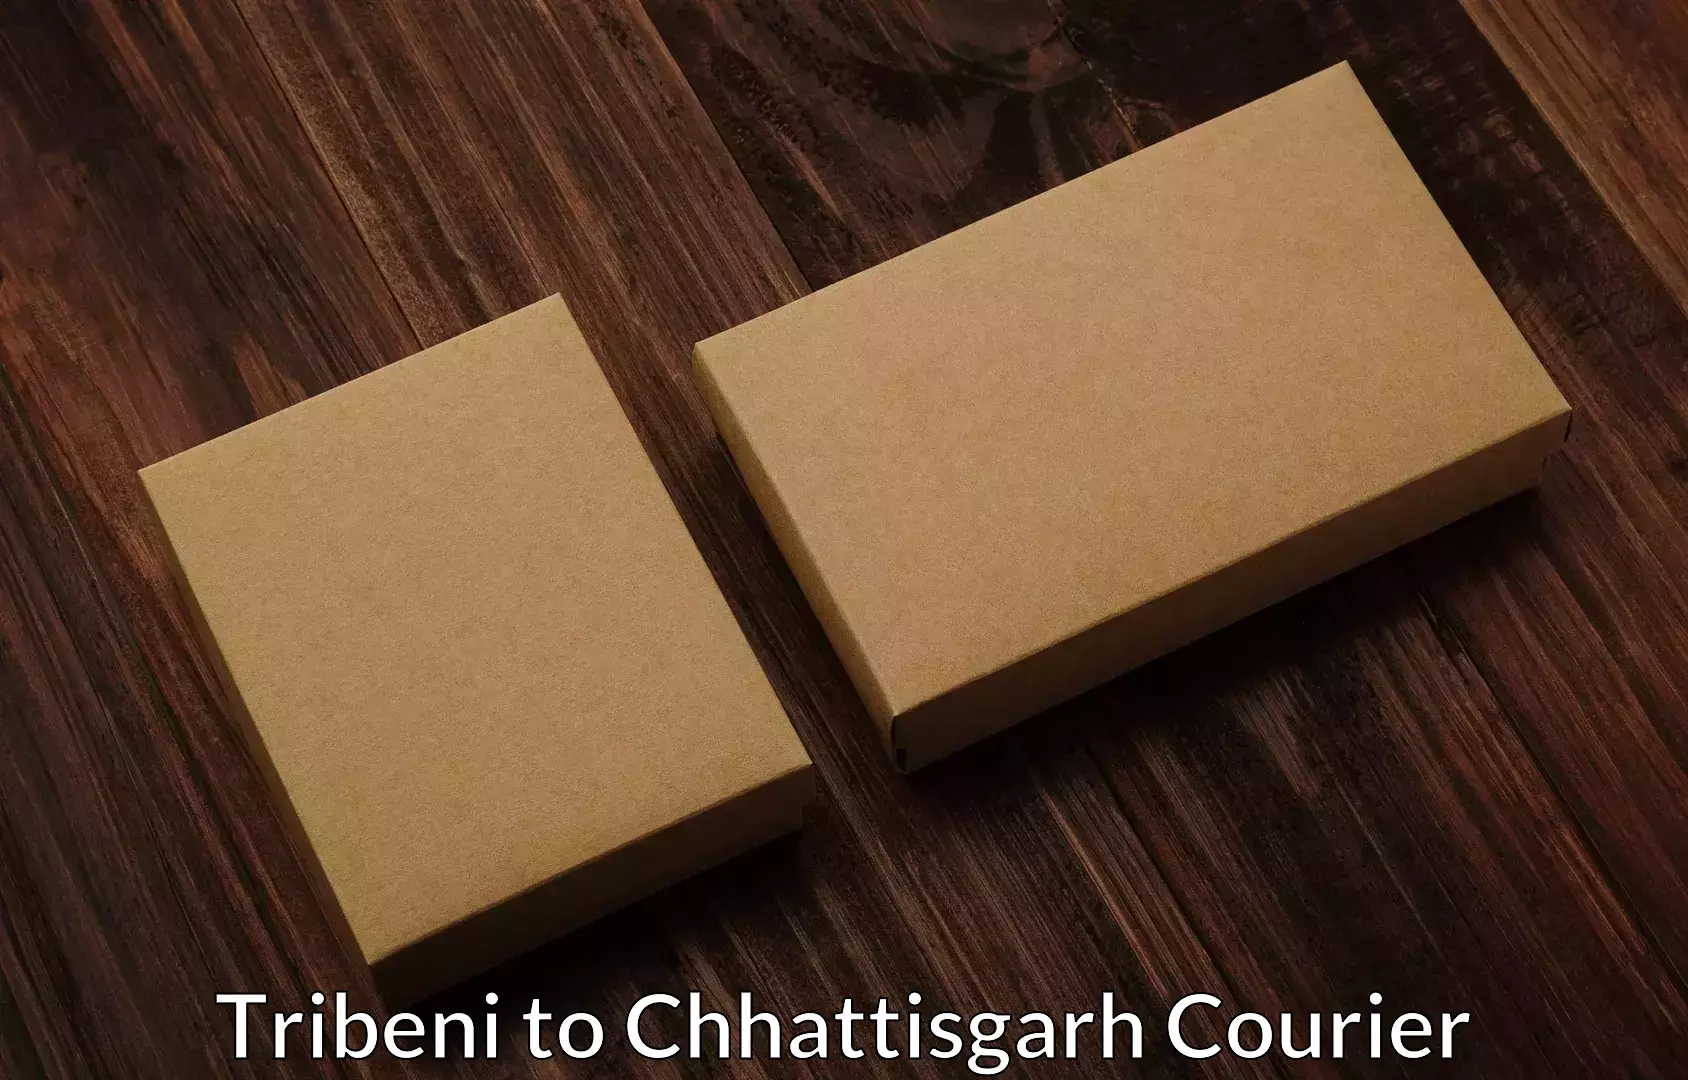 Affordable relocation services Tribeni to Raigarh Chhattisgarh